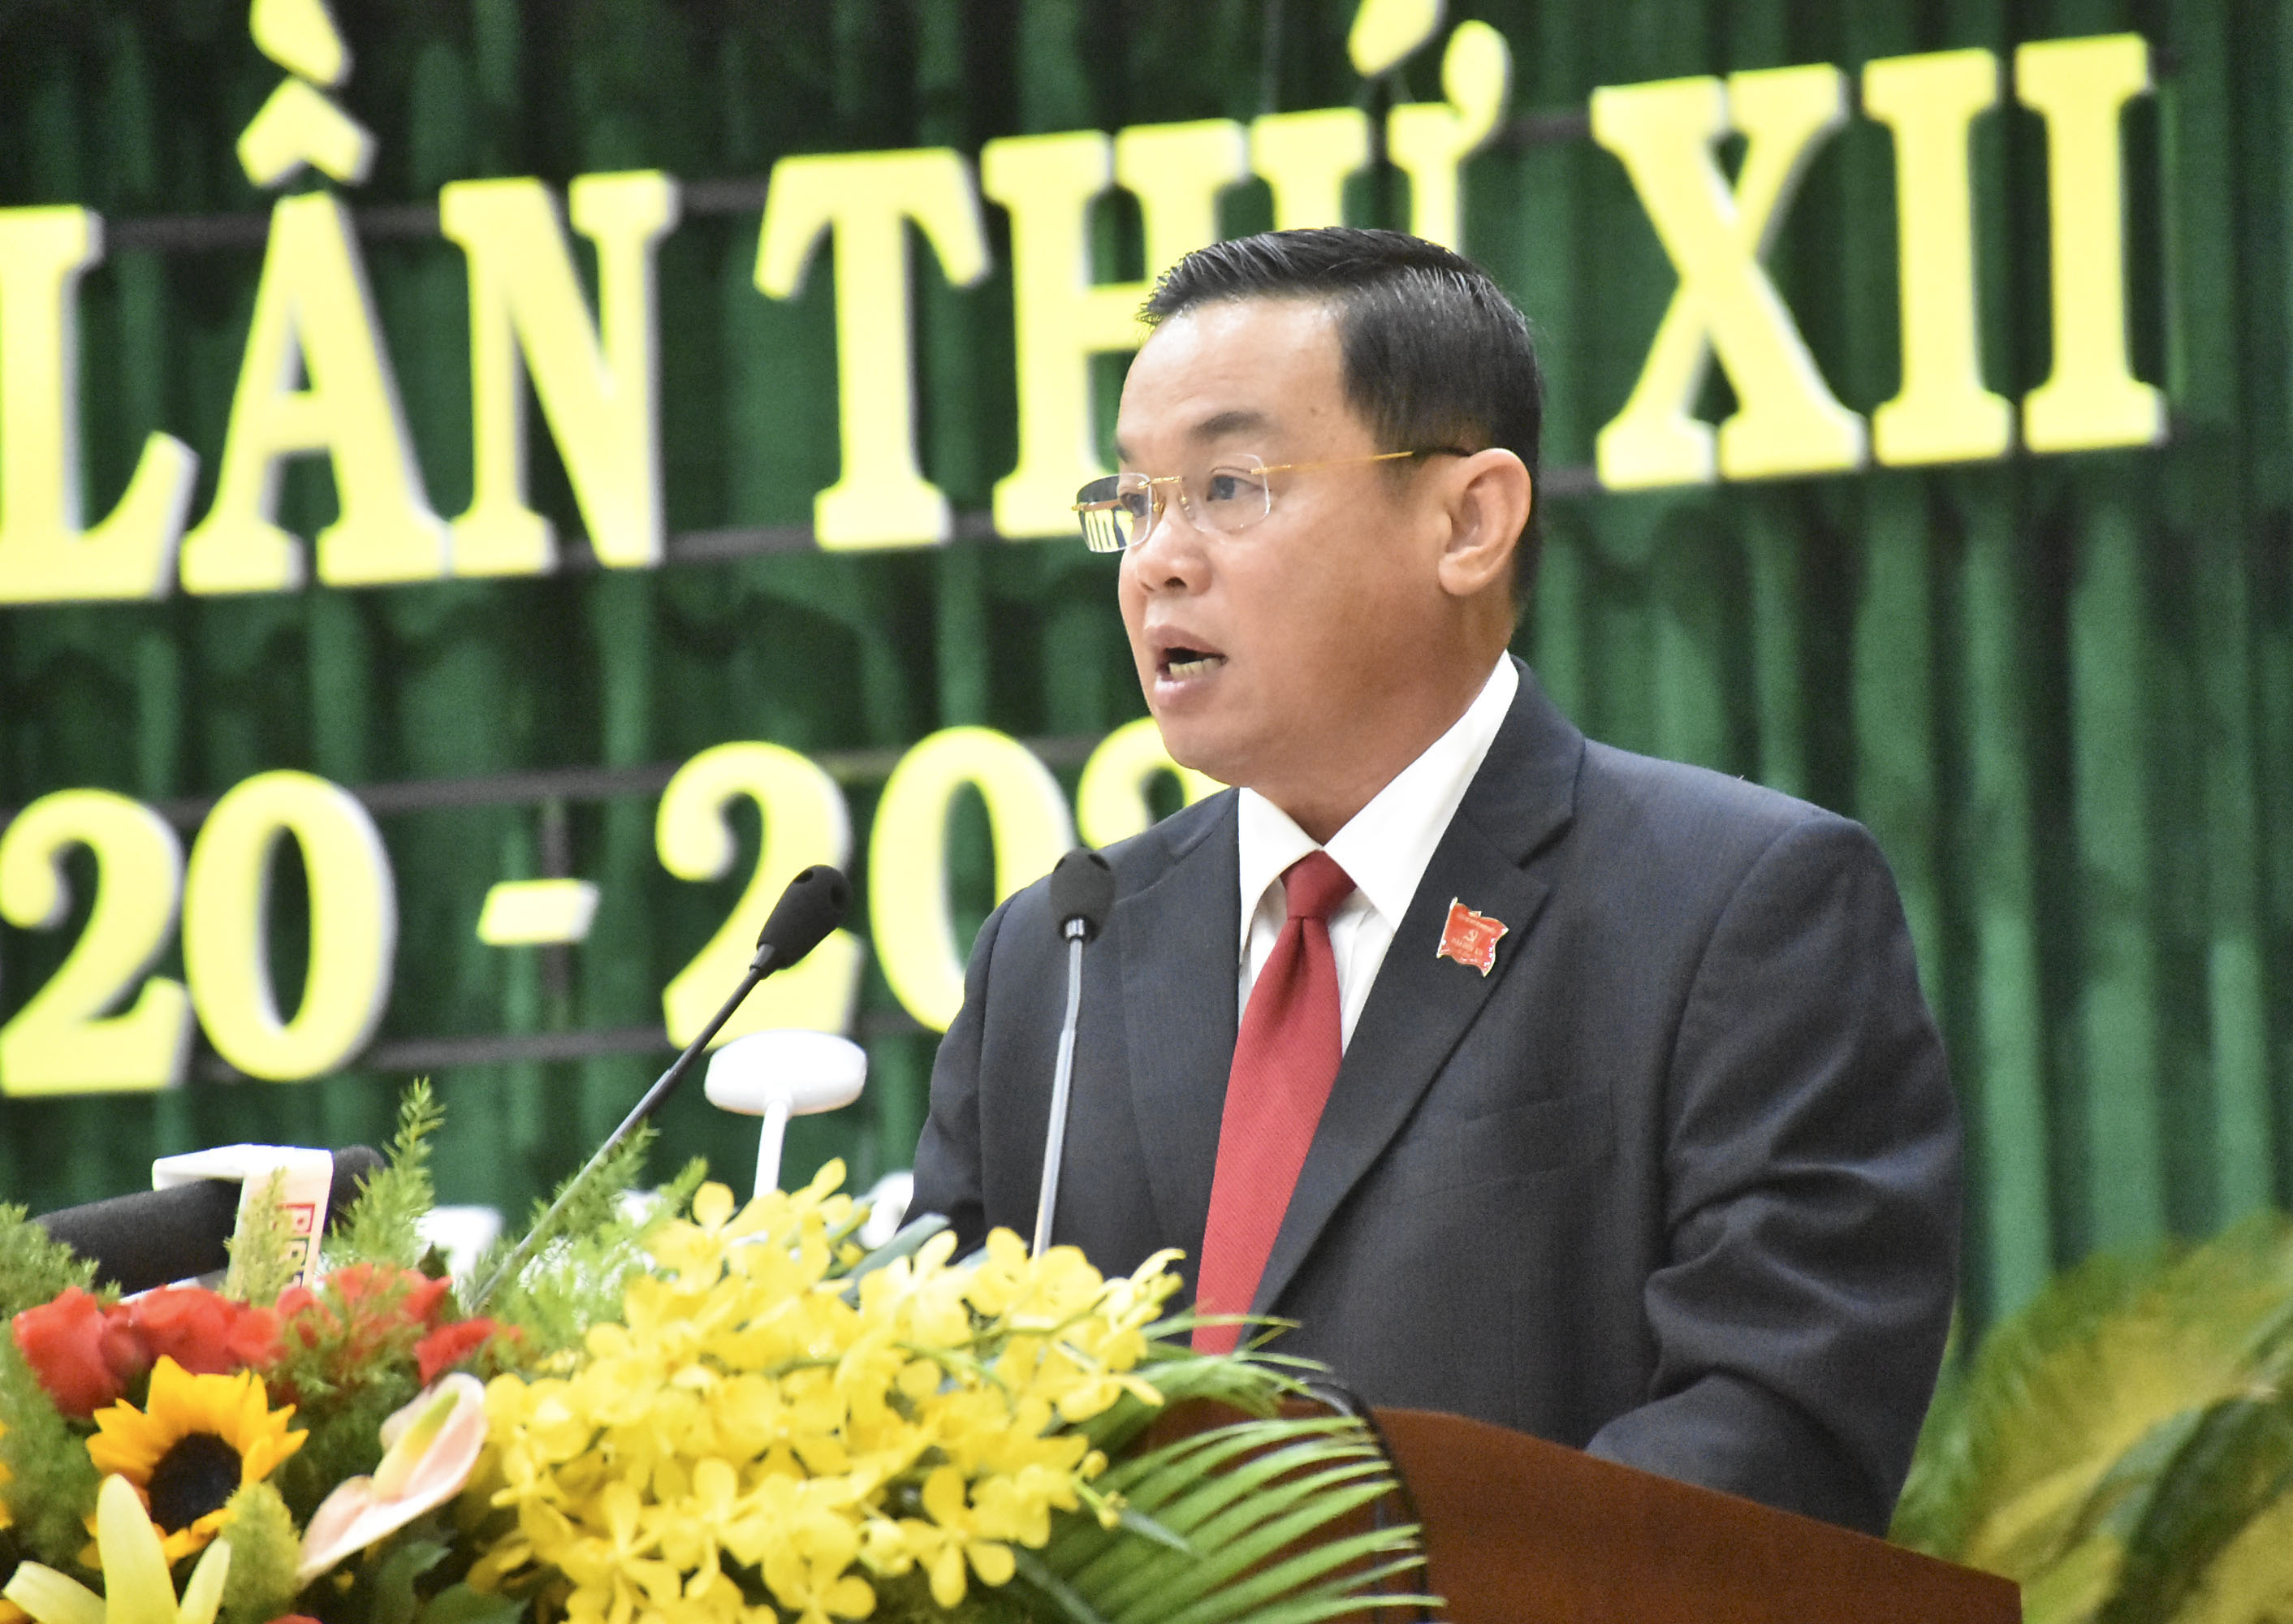 Đồng chí Nguyễn Bá Hùng, Phó Bí thư Huyện ủy, Chủ tịch UBND huyện Long Điền trình bày Báo cáo Chính trị tại Đại hội.